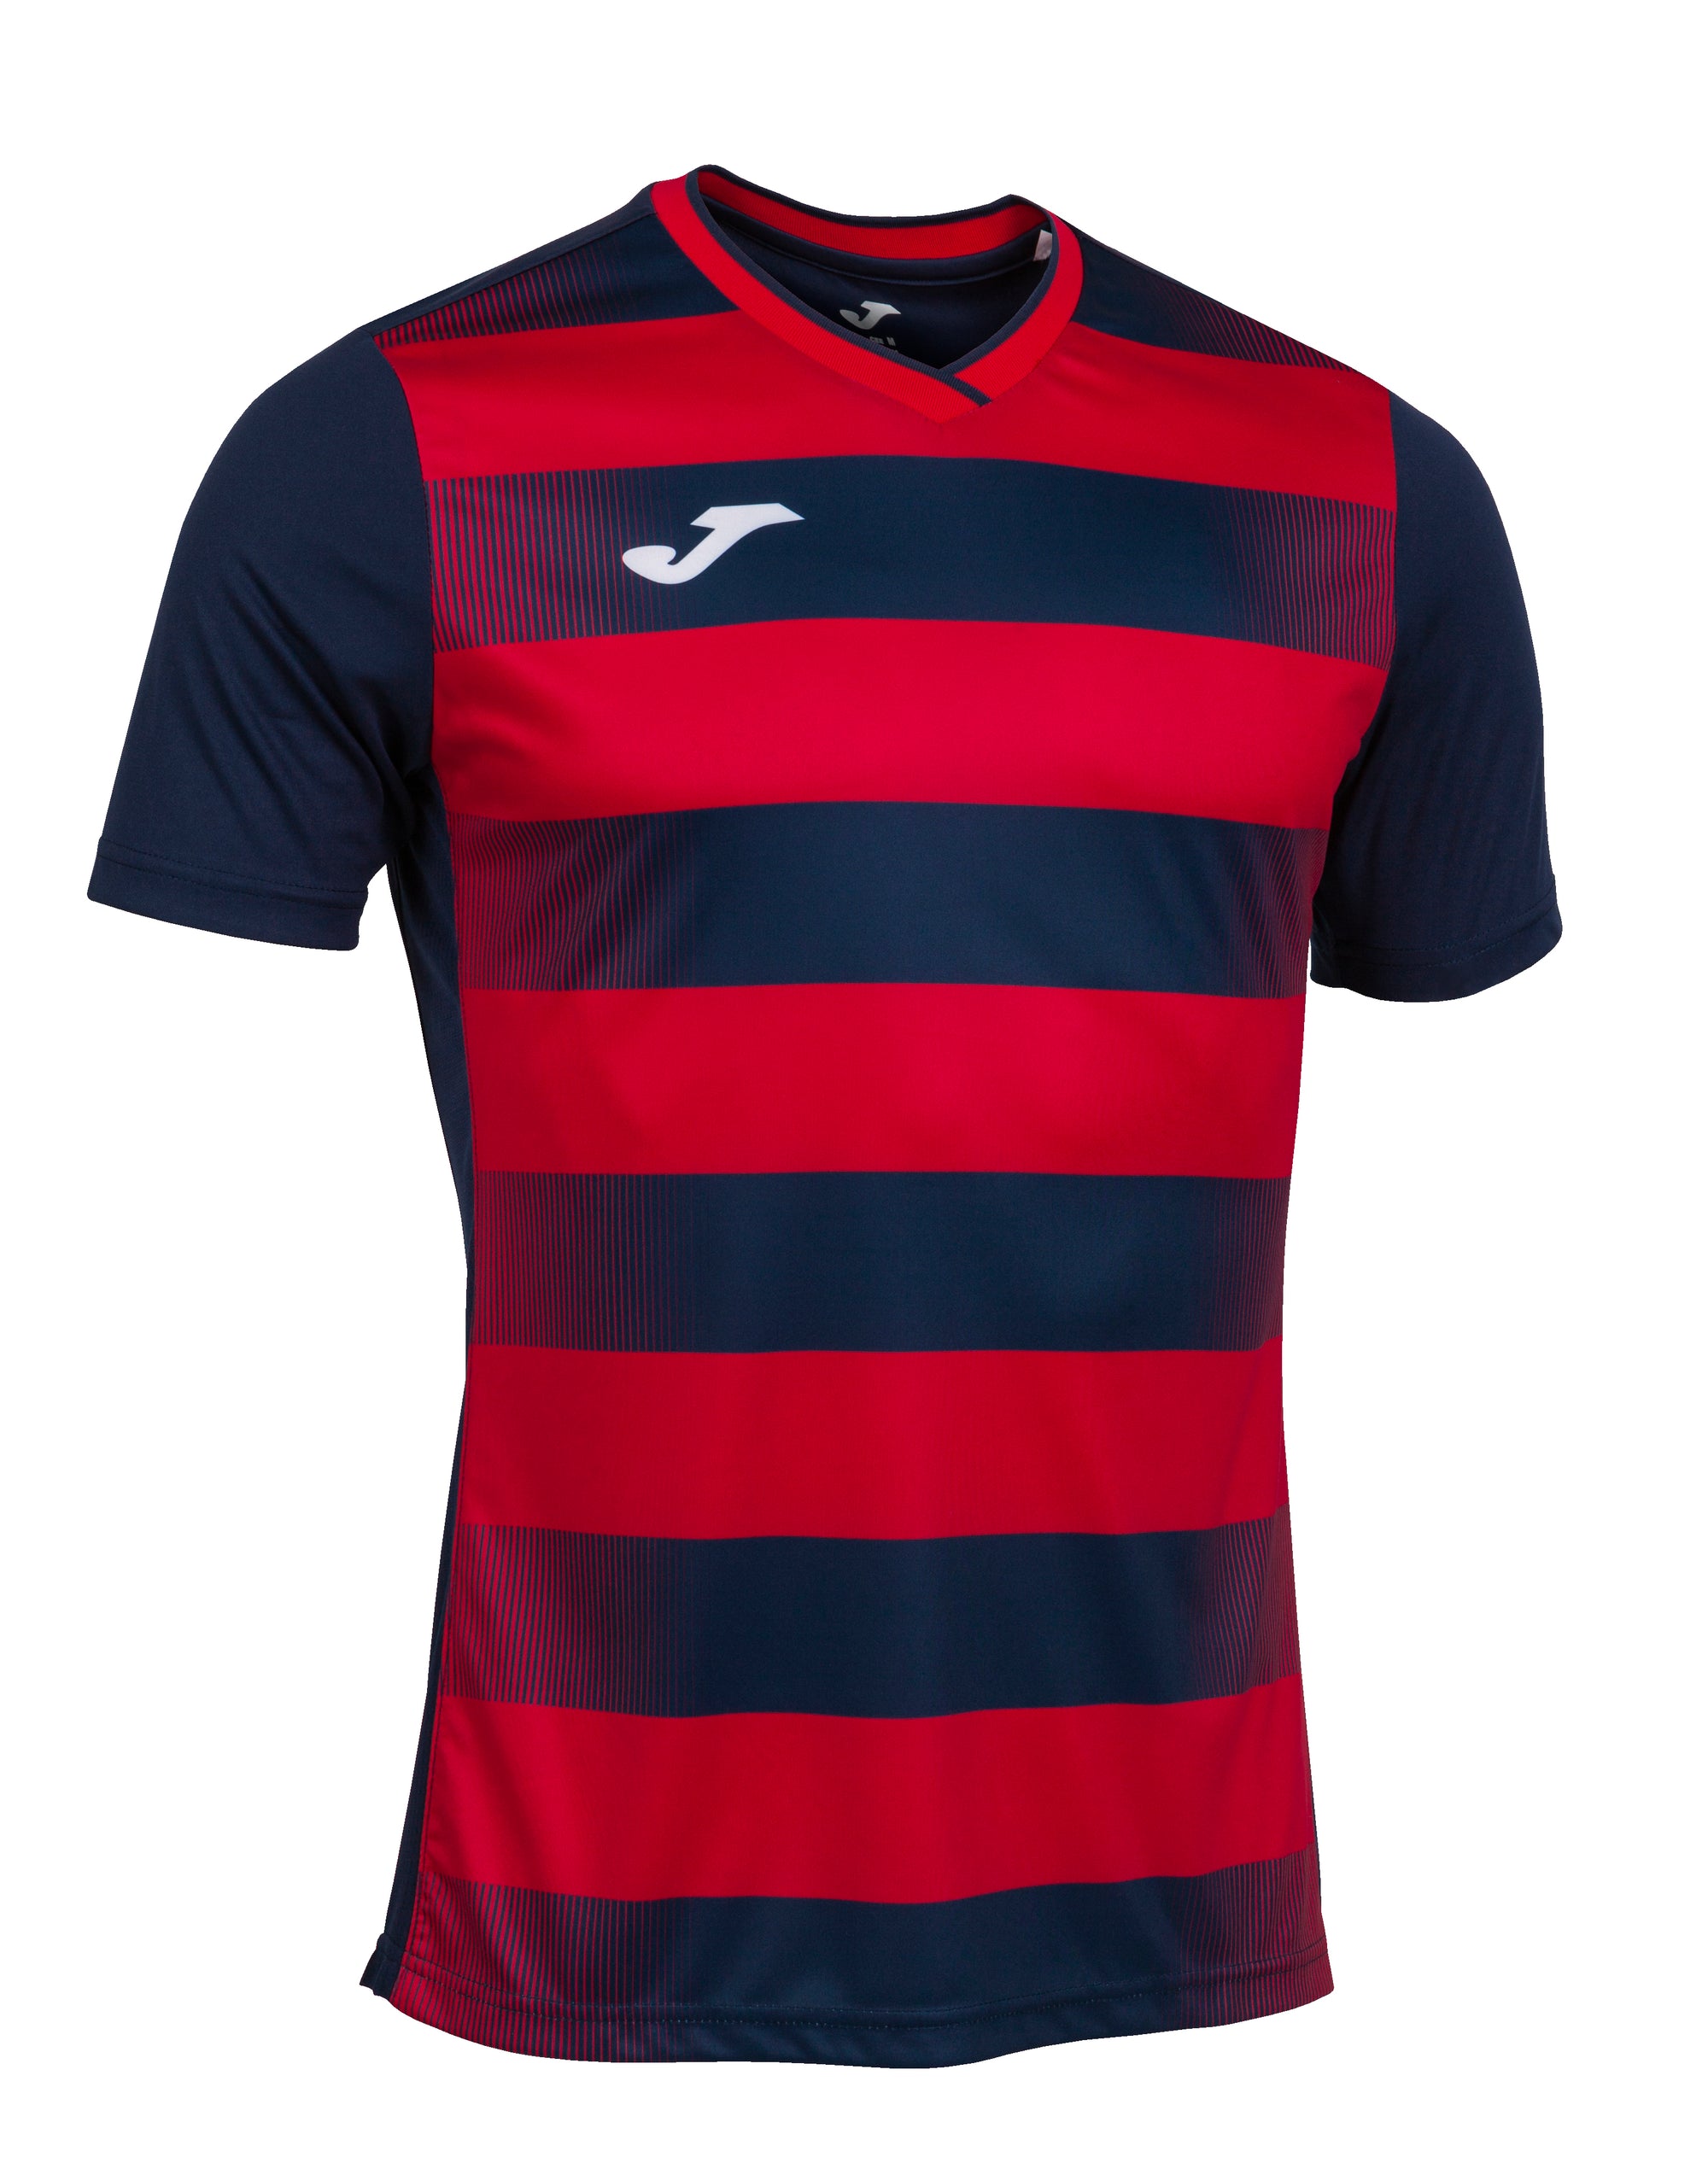 Joma Europa V Short Sleeve T-Shirt - Dark Navy/Red